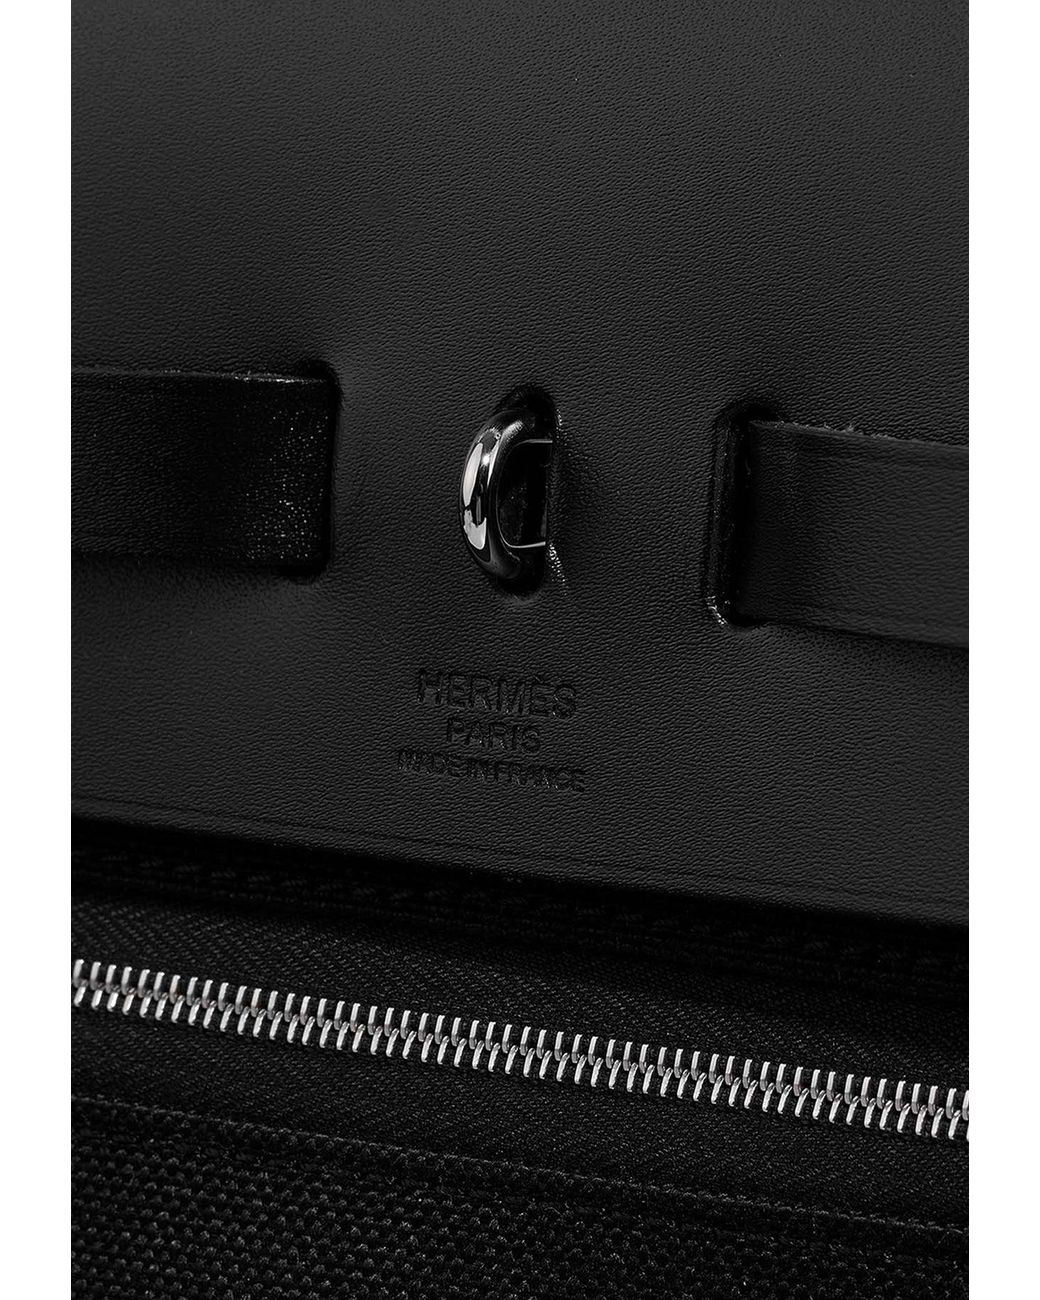 67959 auth HERMES black & ecru 2020 HERBAG ZIP CABINE 50 Bag